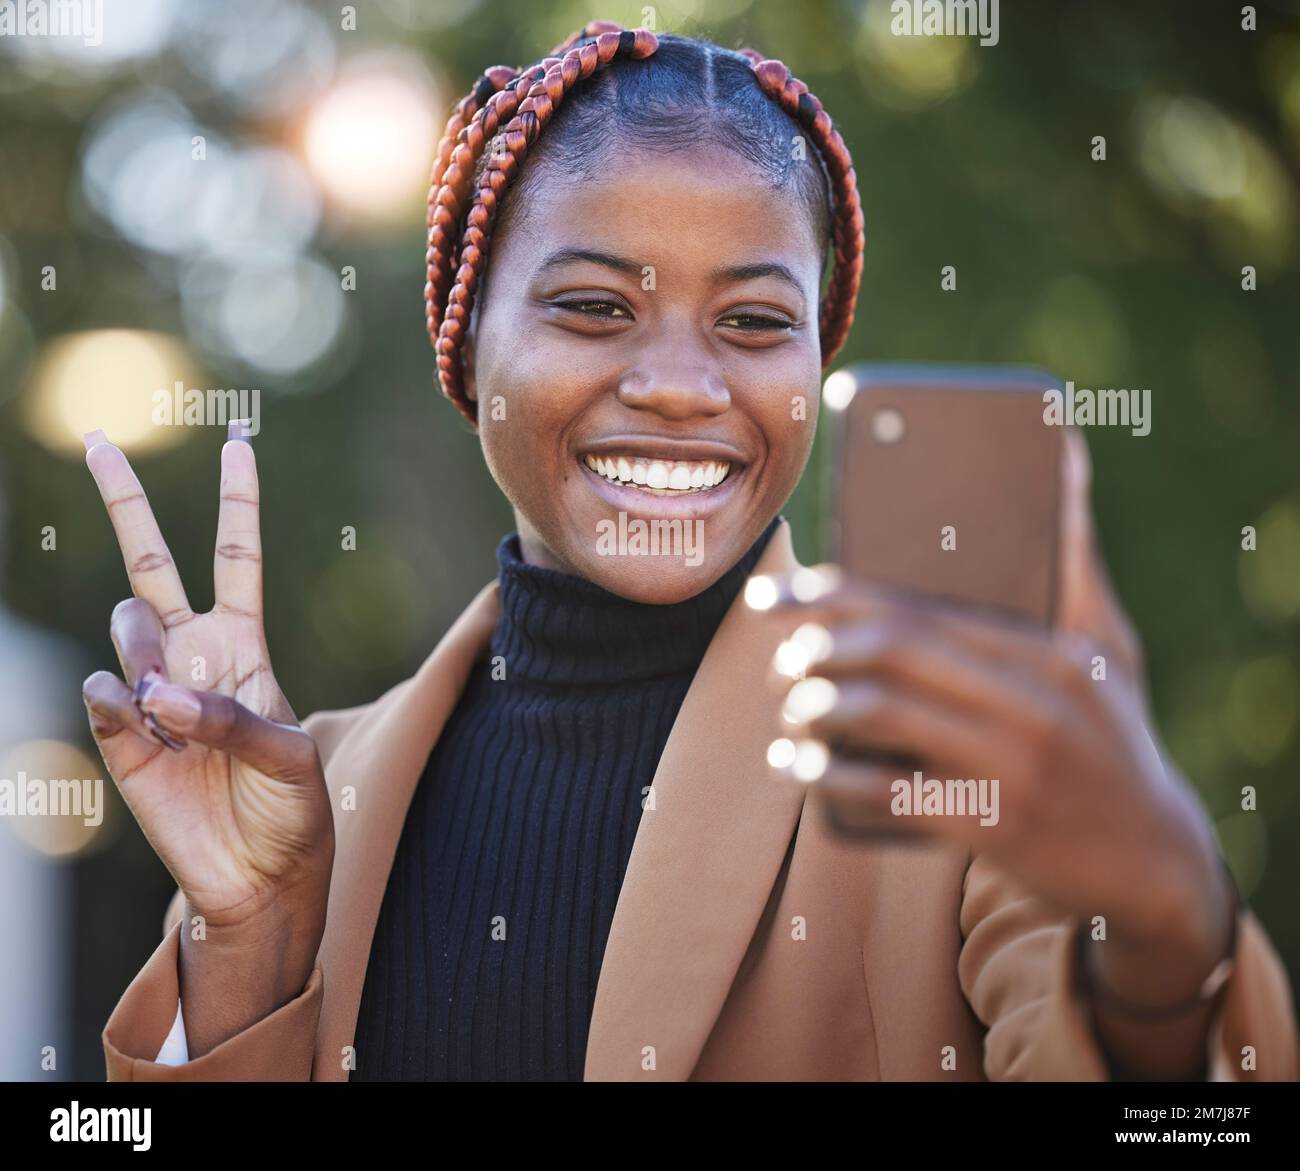 Gesicht, Telefon Selfie und schwarze Frau mit Friedensschild im Park Outdoor. Technologie, Mobiltelefon und Frau mit Handgesten, die ein Bild oder Foto macht Stockfoto